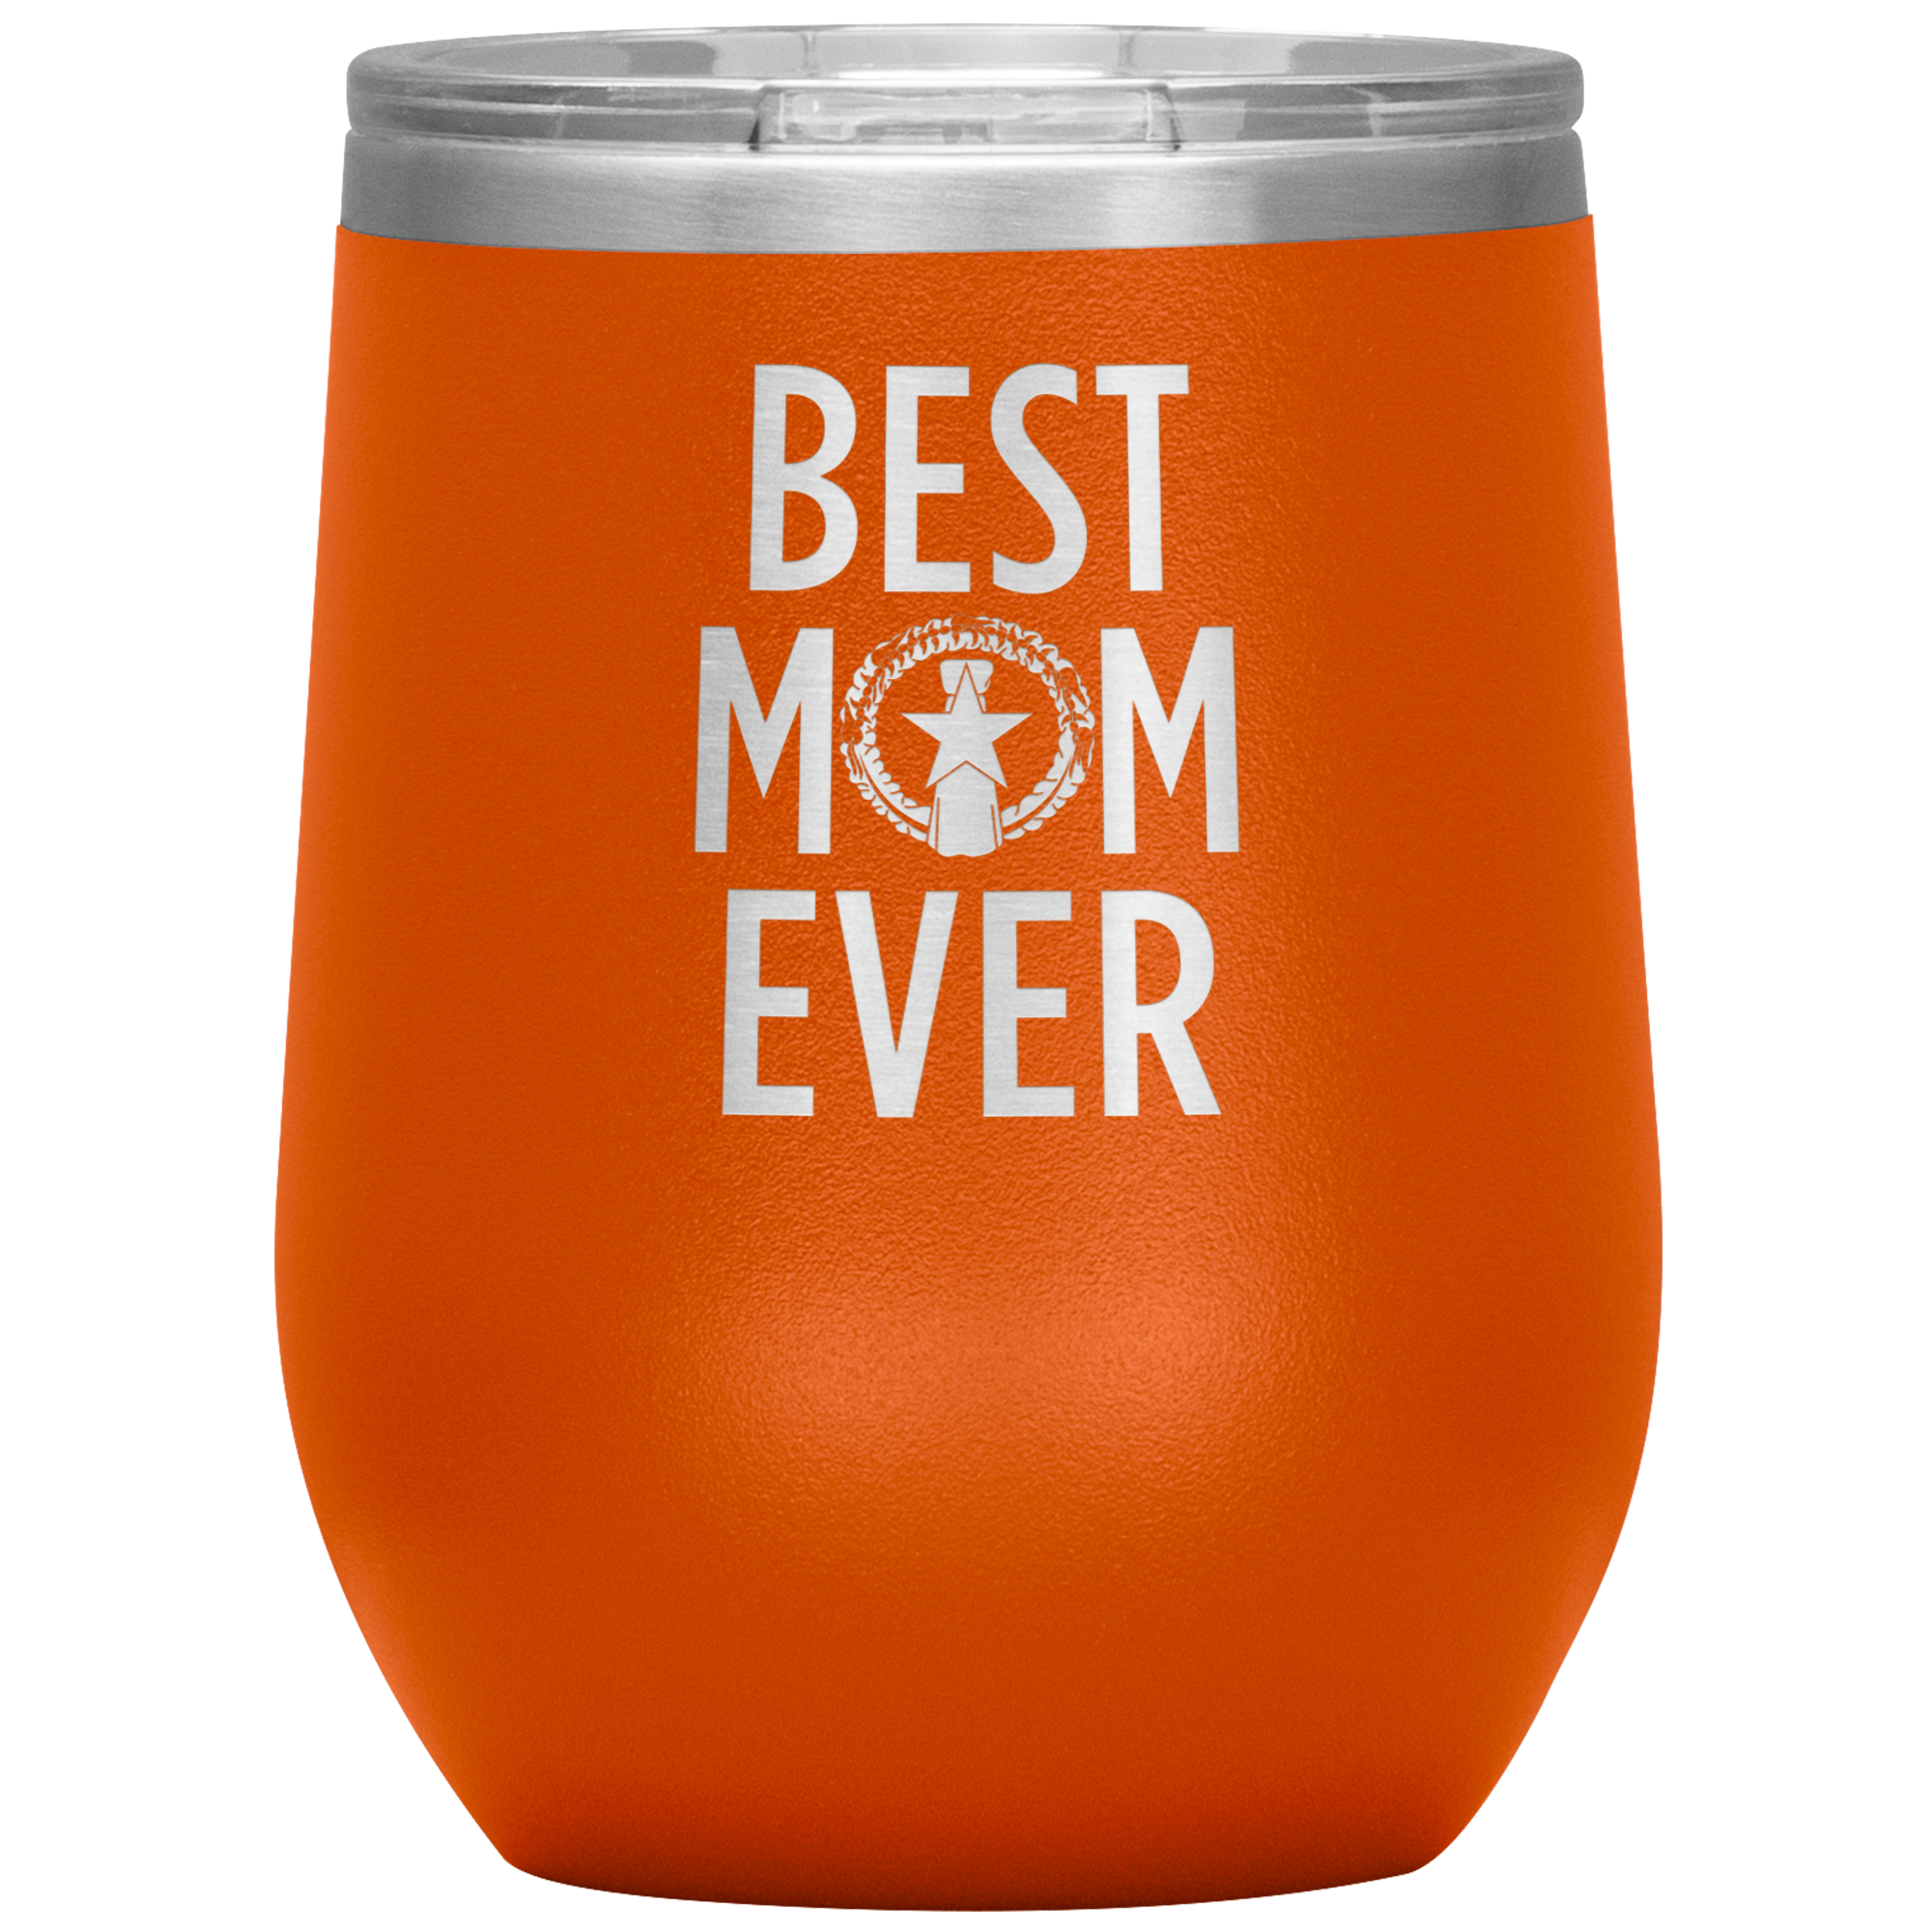 Best Mom Ever CNMI Seal Wine Tumbler